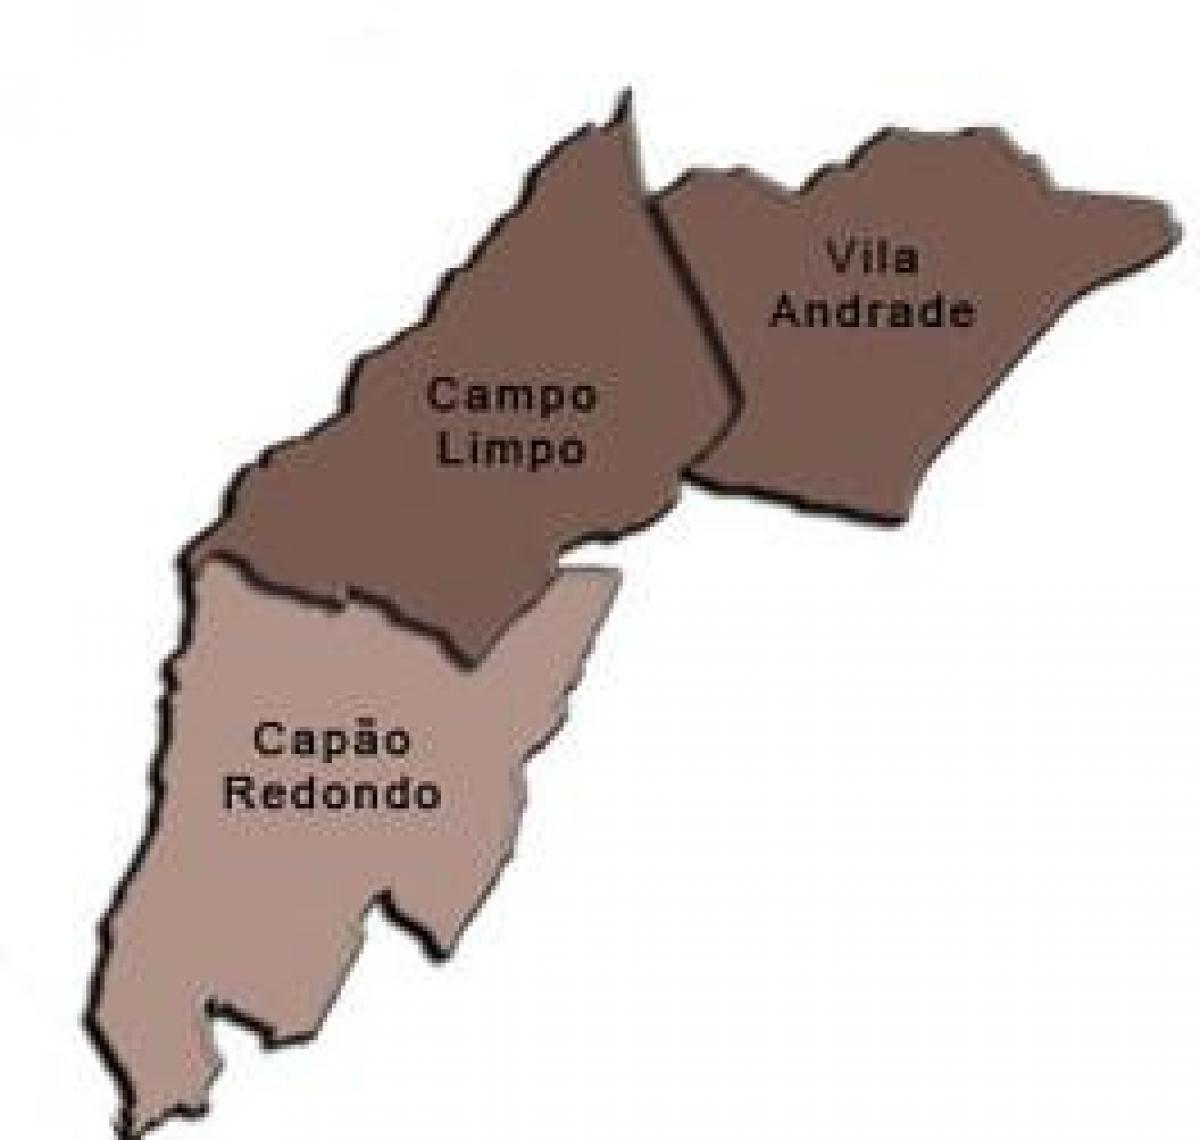 Mapa de Campo Limpo da sub-prefeitura